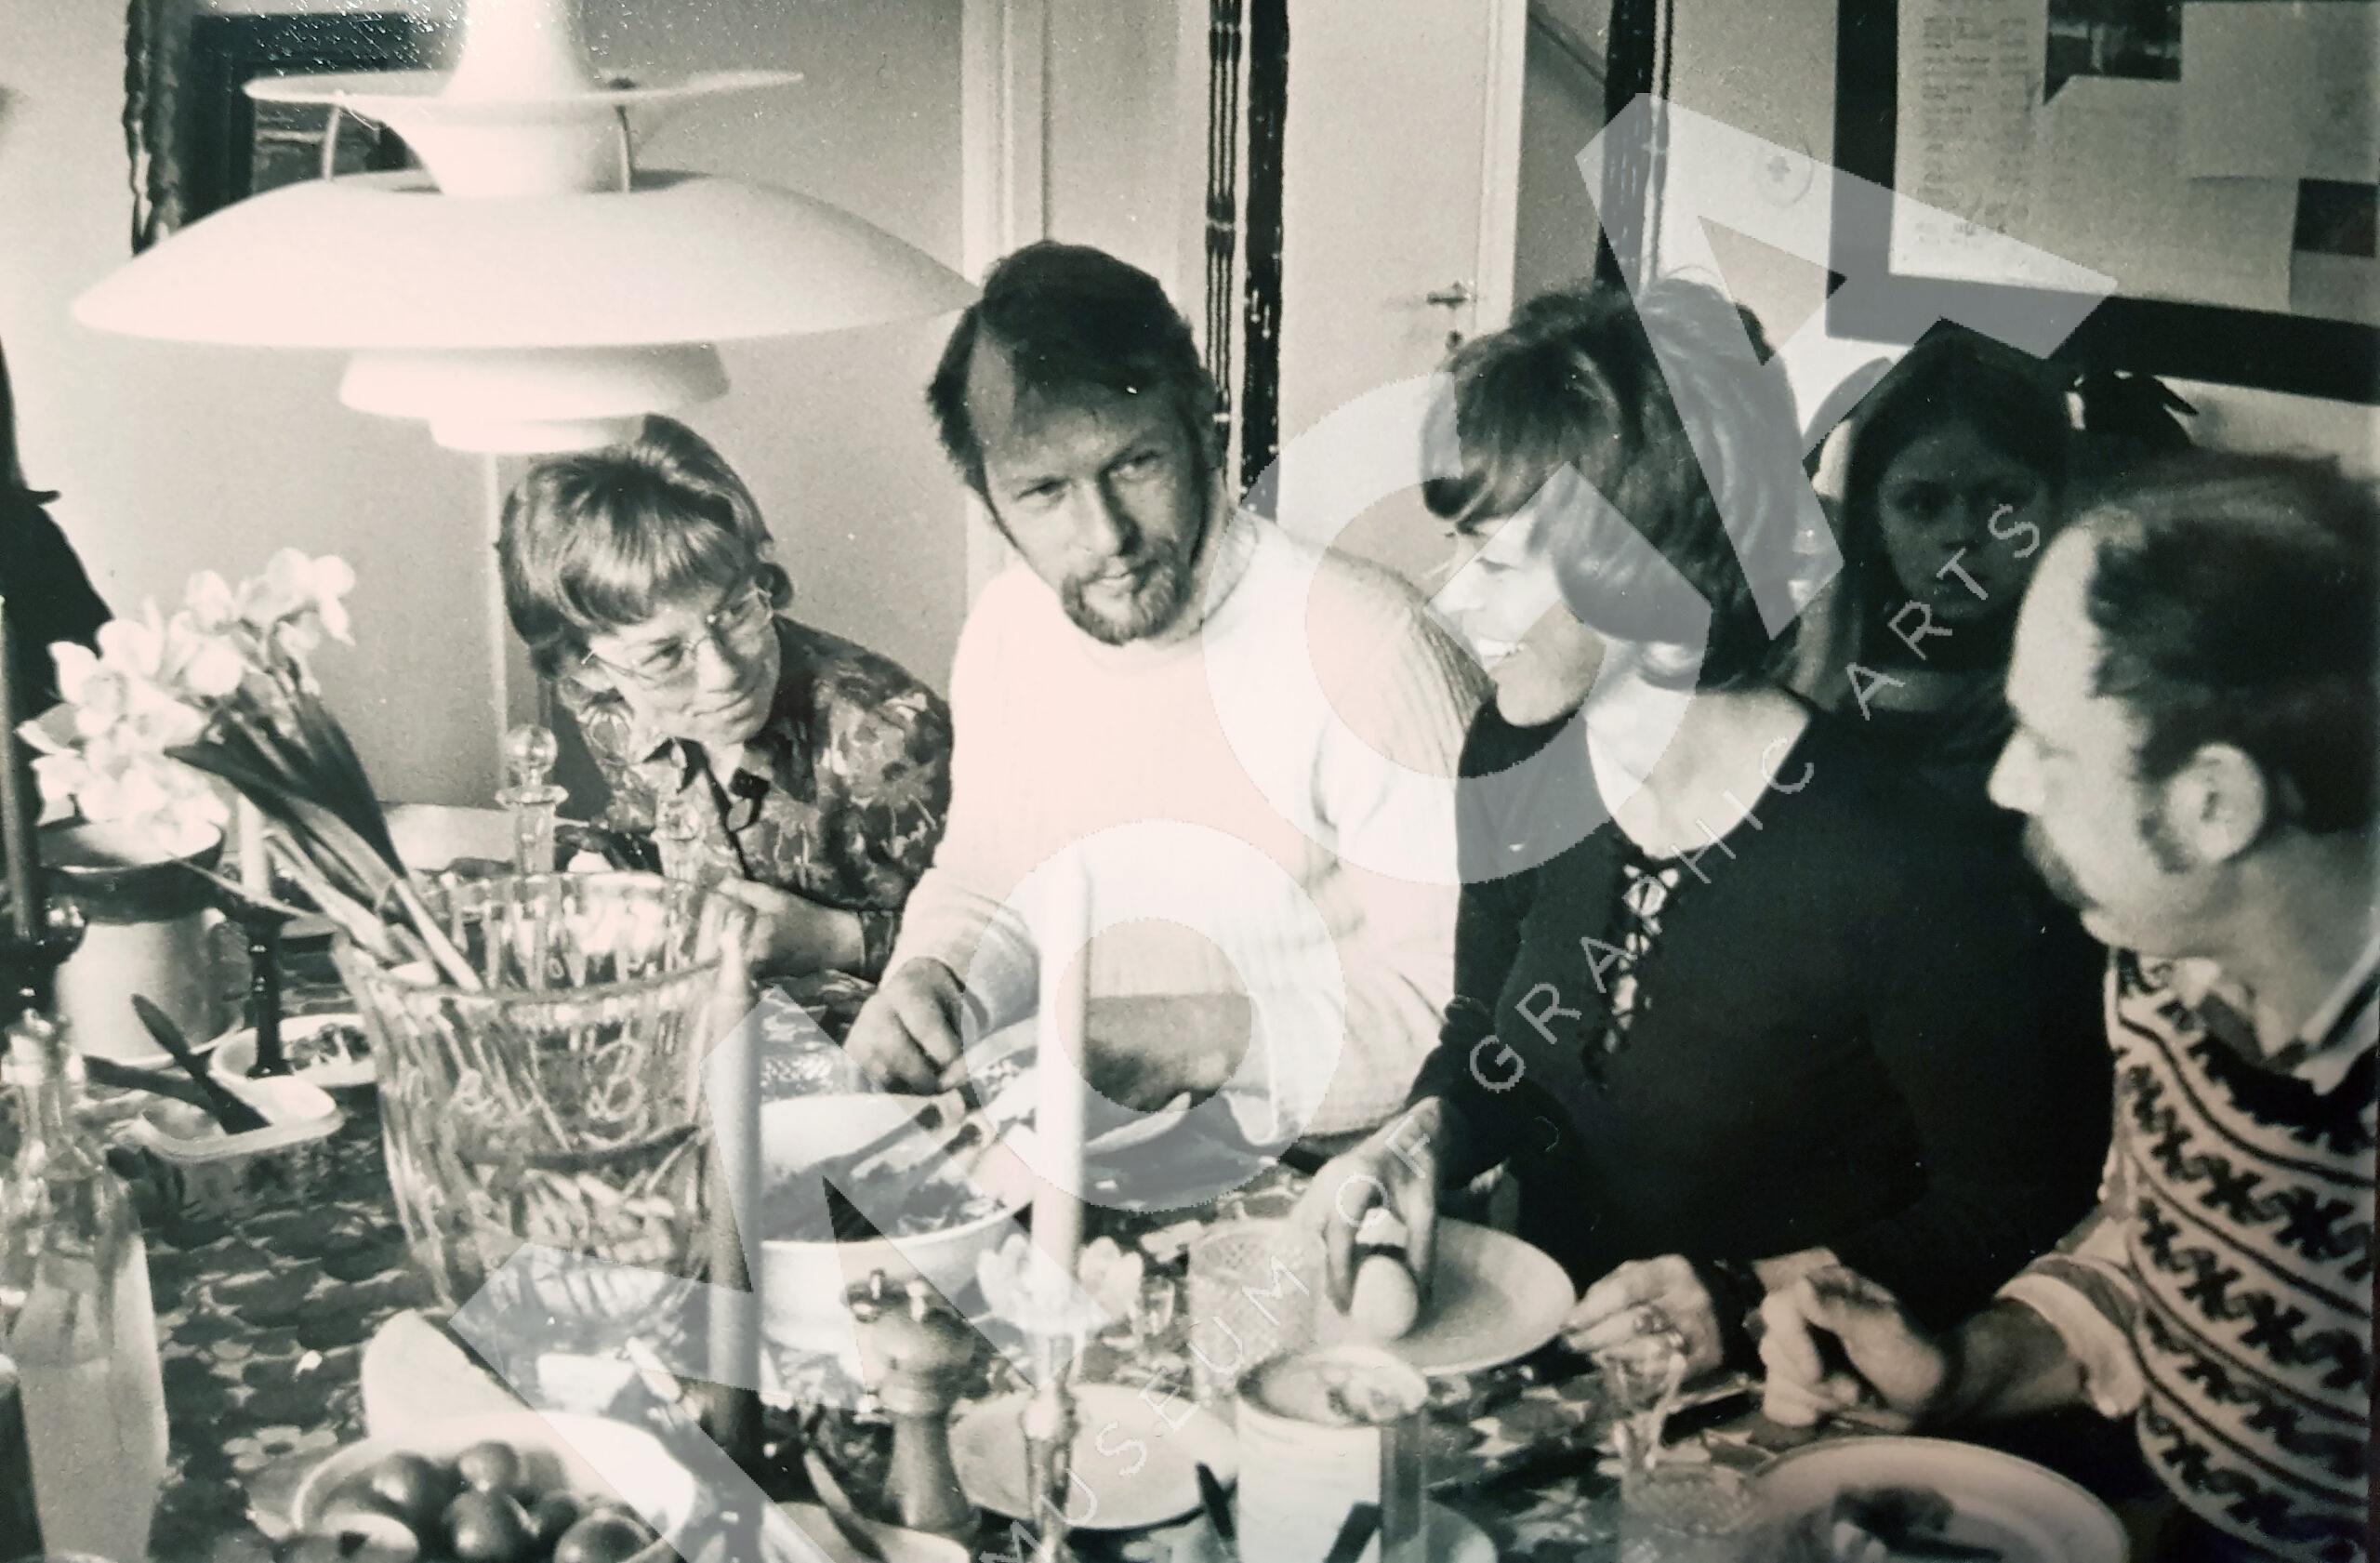 Lunch hos Barks på 70-talet.